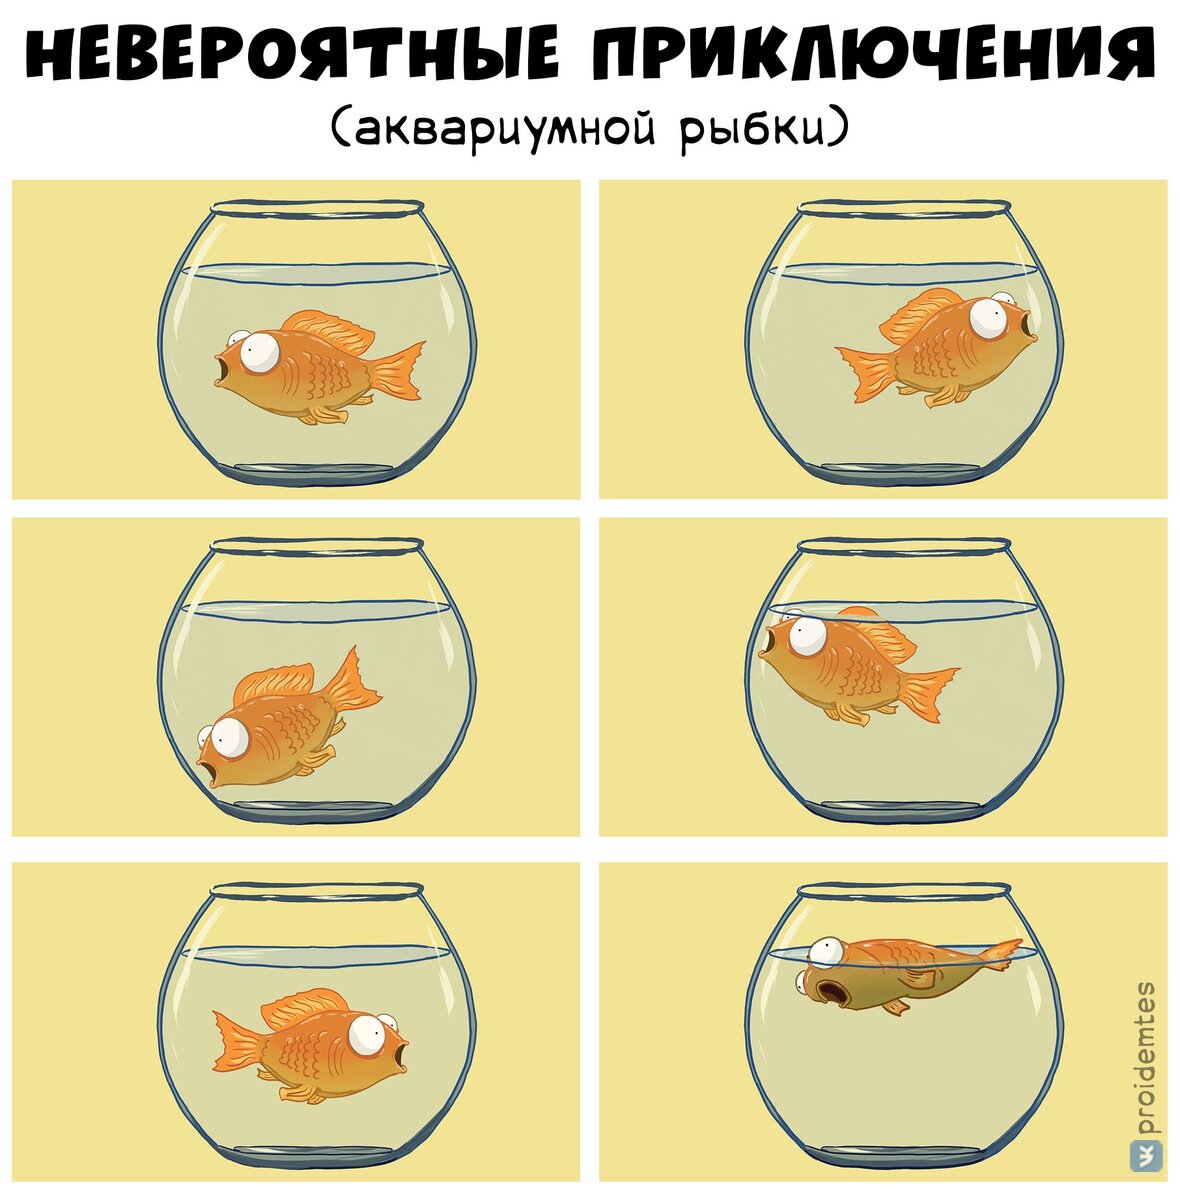 Приколы про аквариумных рыбок